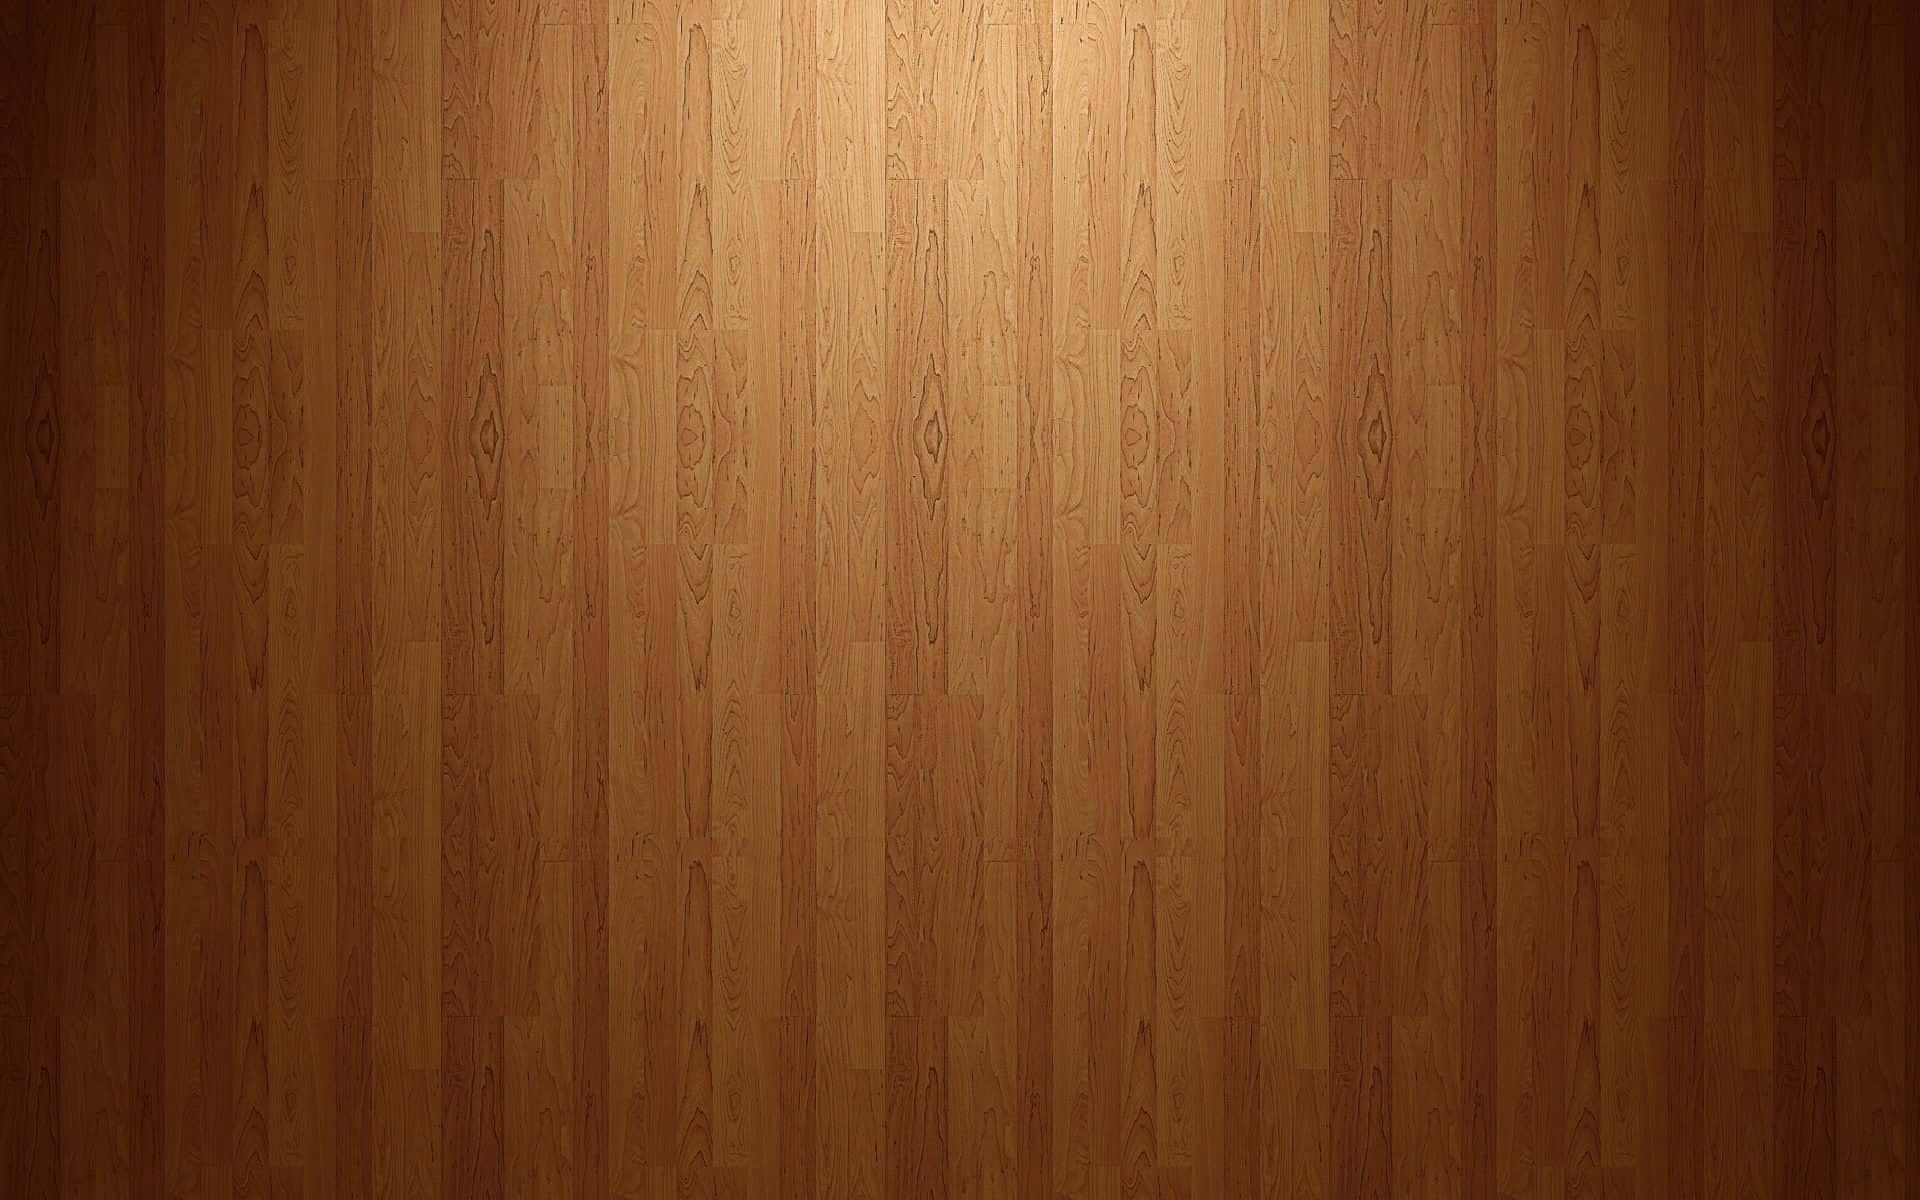 Wood Floor Wallpaper Hd - Wallpapers For Desktop